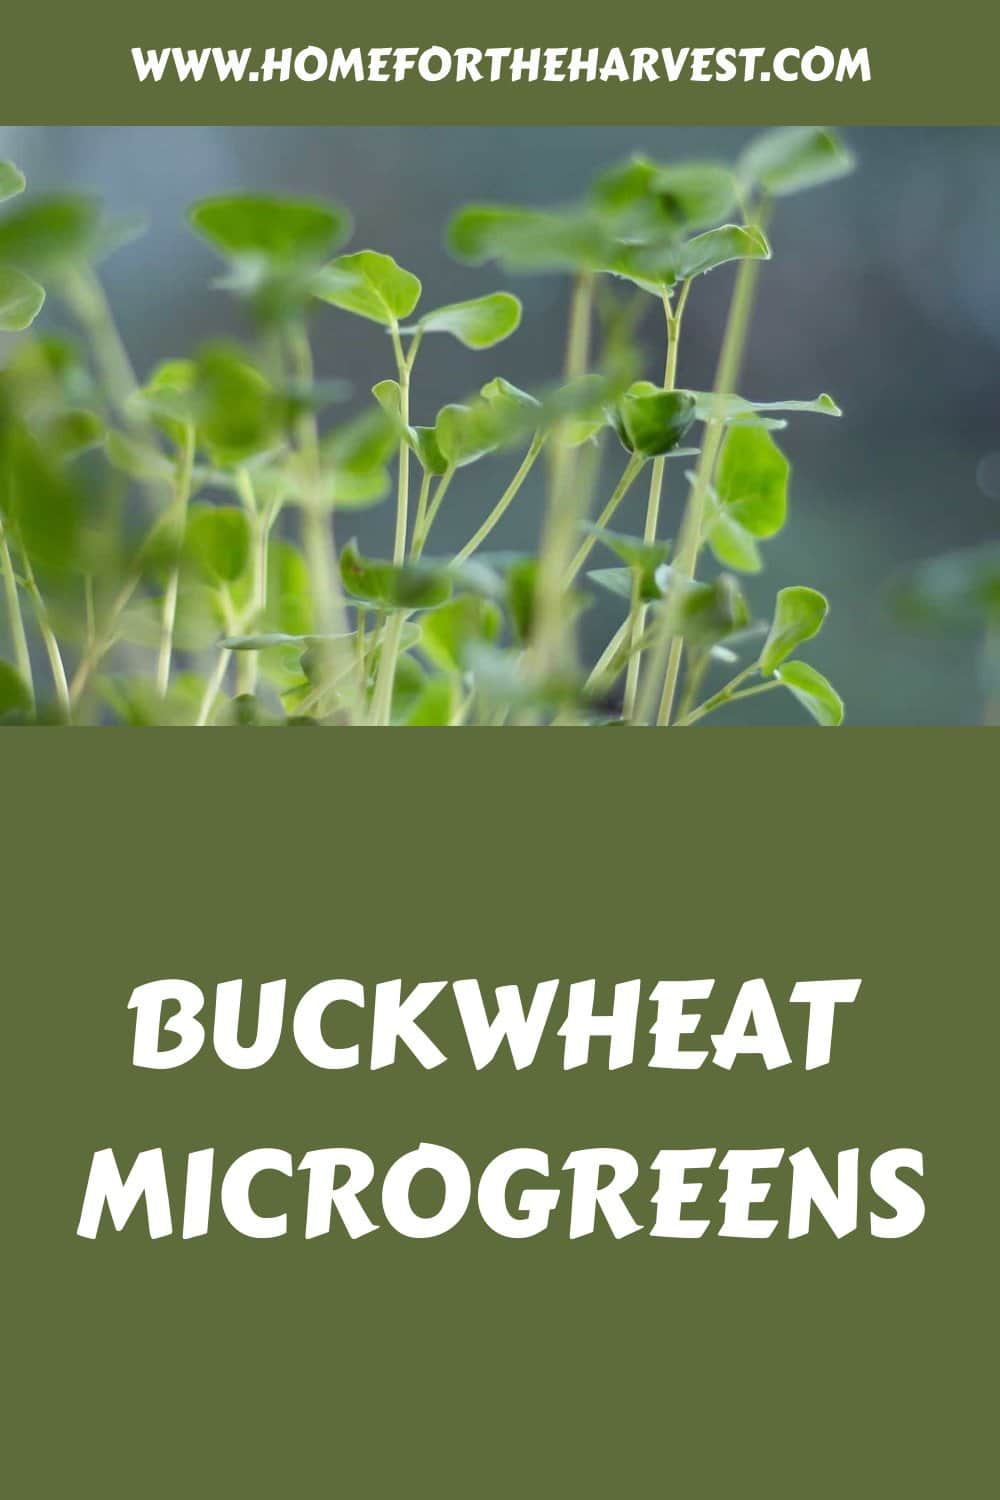 Buckwheat microgreens generated pin 5821